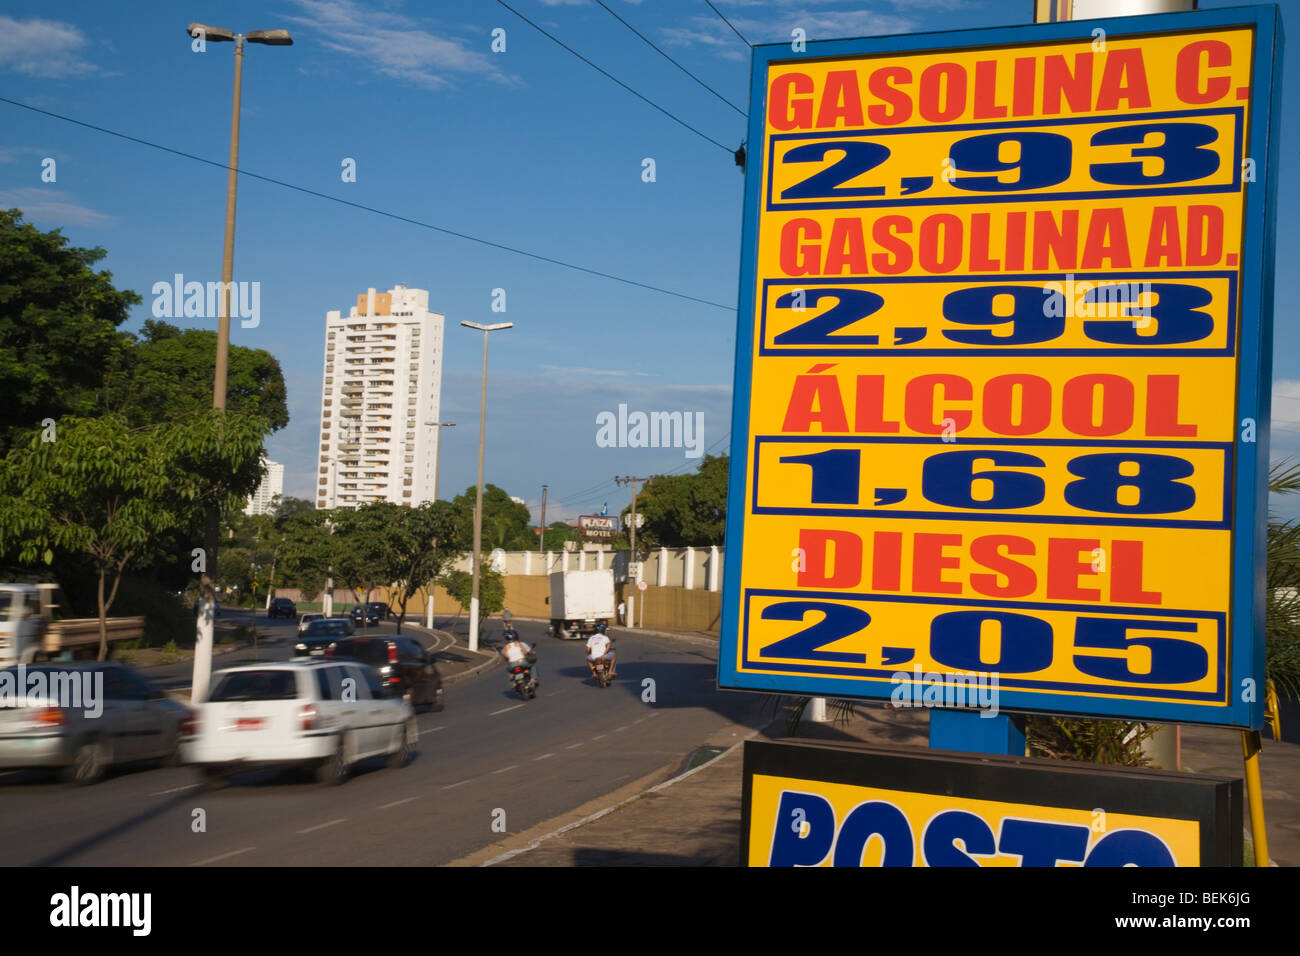 Kraftstoff-Preisliste für Diesel, Ethanol, komprimiertes Erdgas und "Benzin C' das Benzin mit Ethanol hinzugefügt. Brazilien Stockfoto